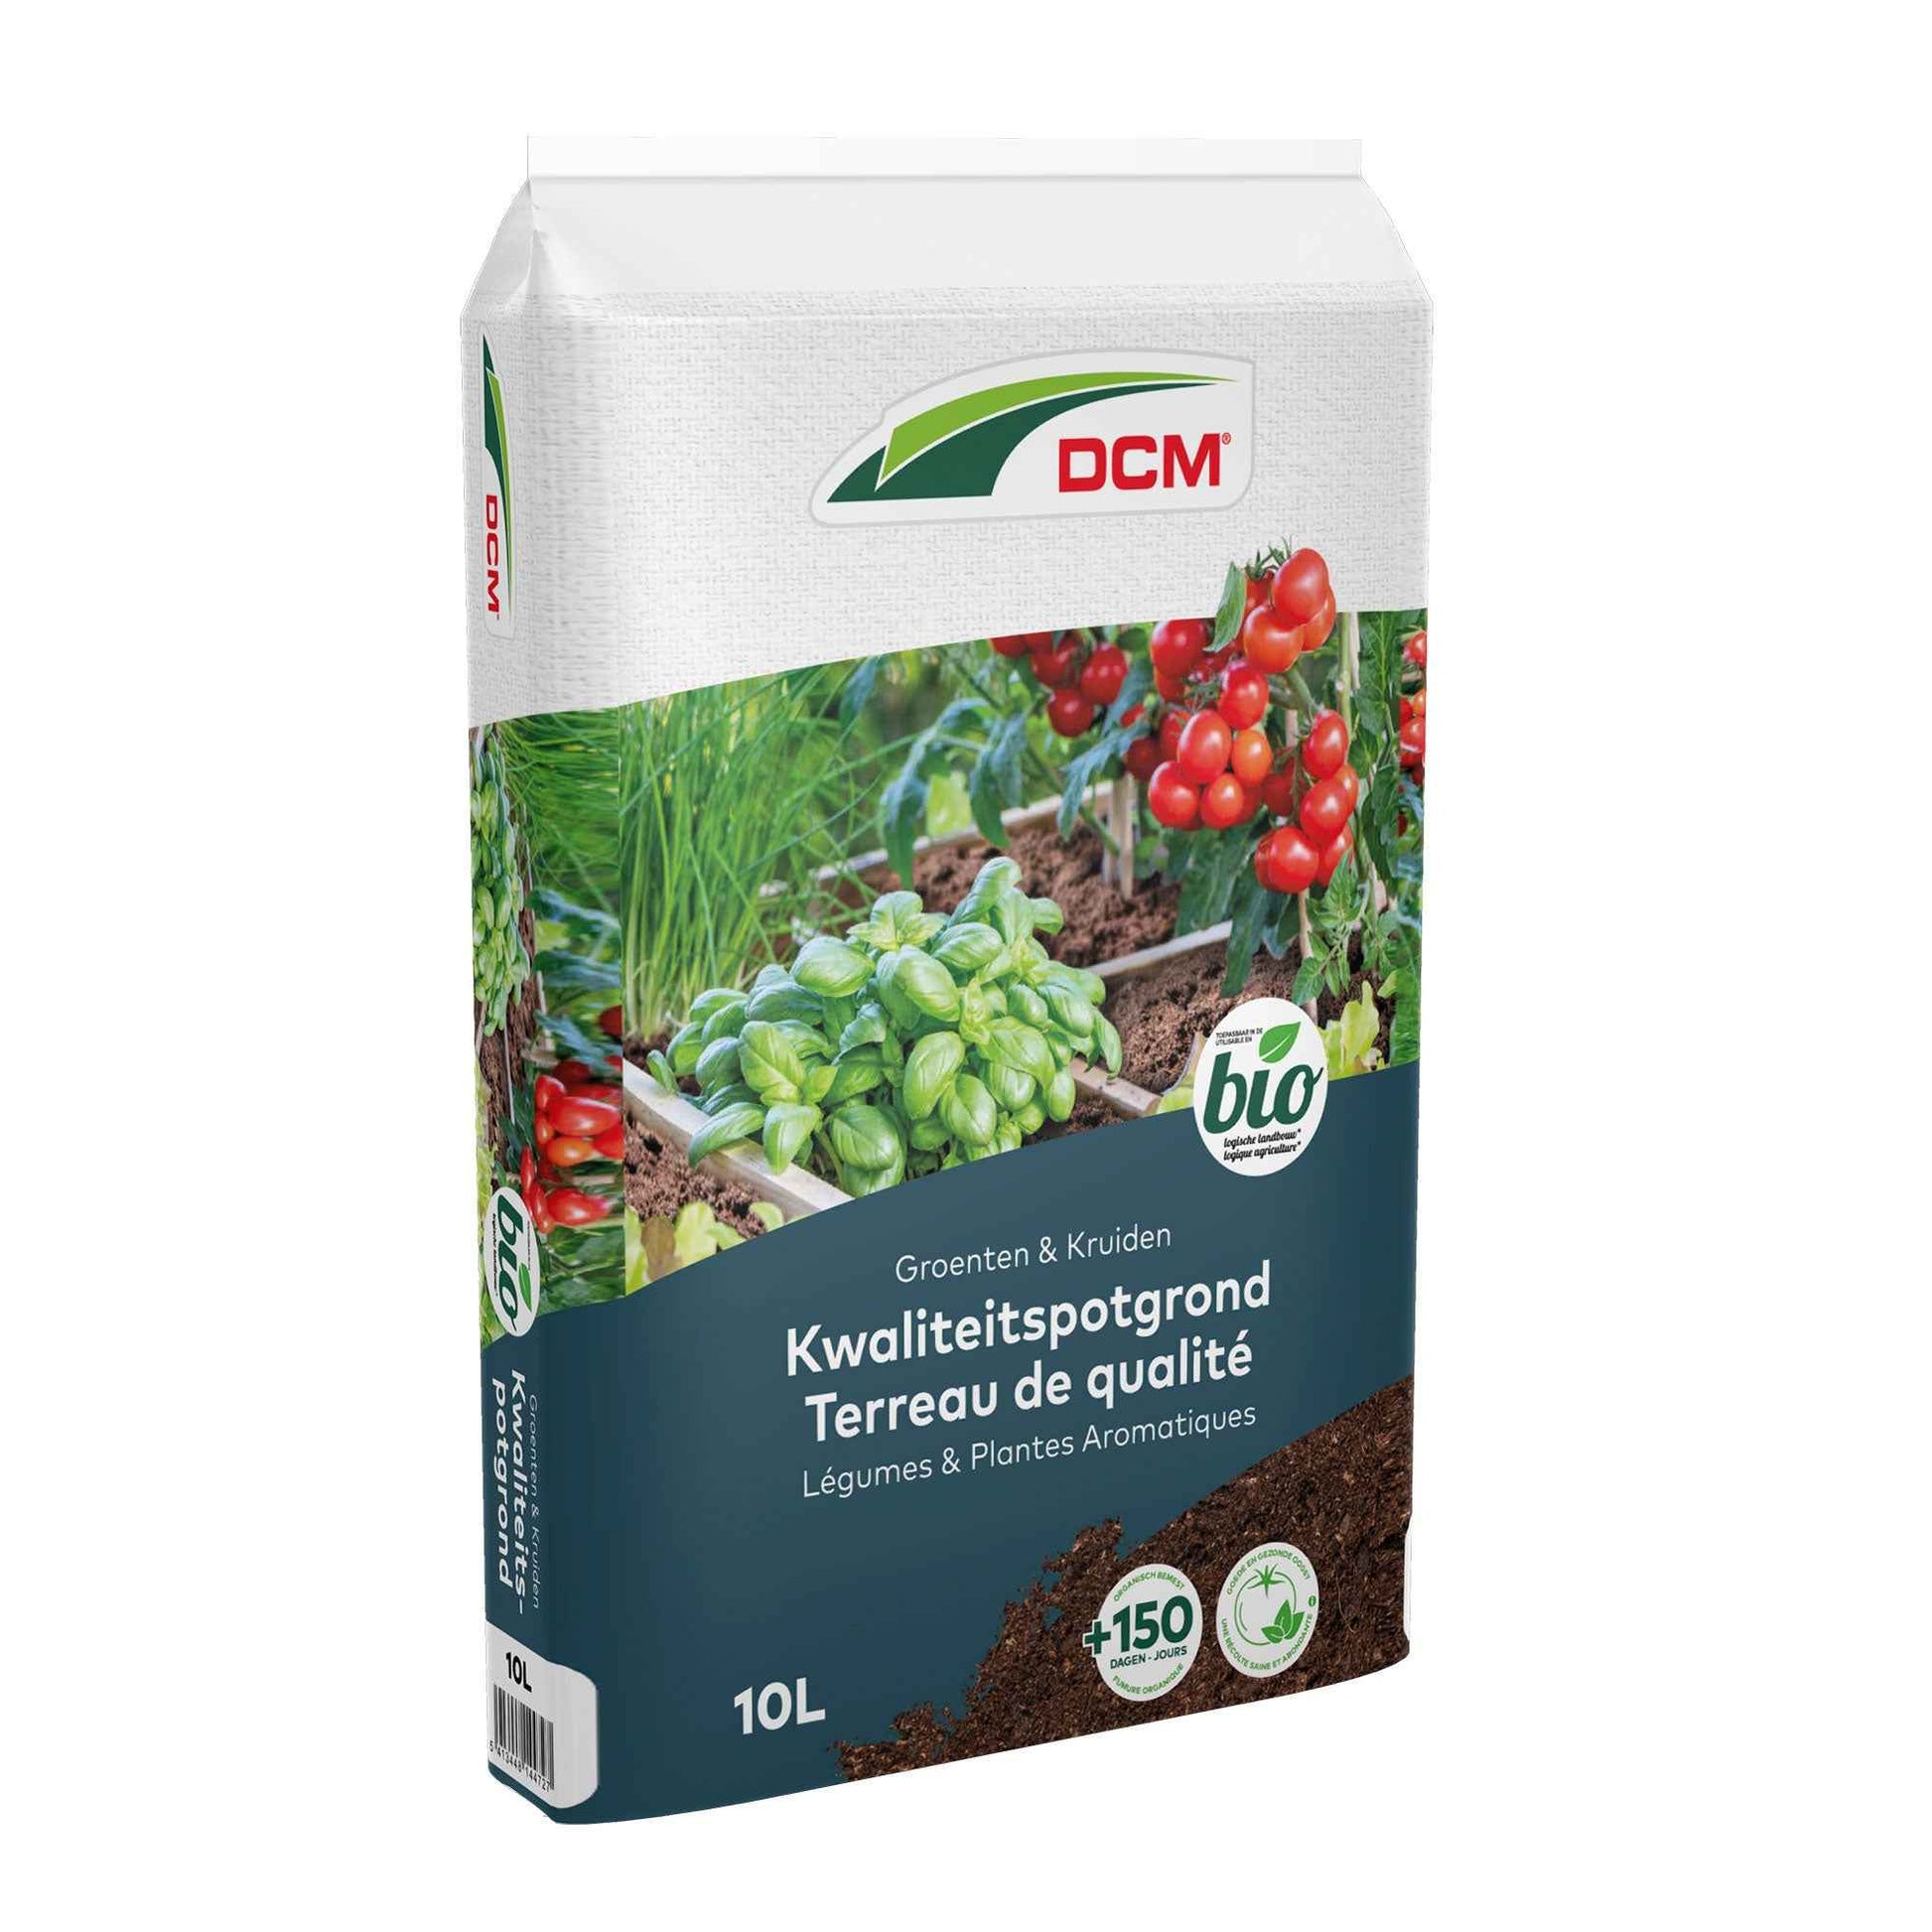 Terreau pour légumes et herbes aromatiques - Biologique 10 litres - DCM - Engrais biologique